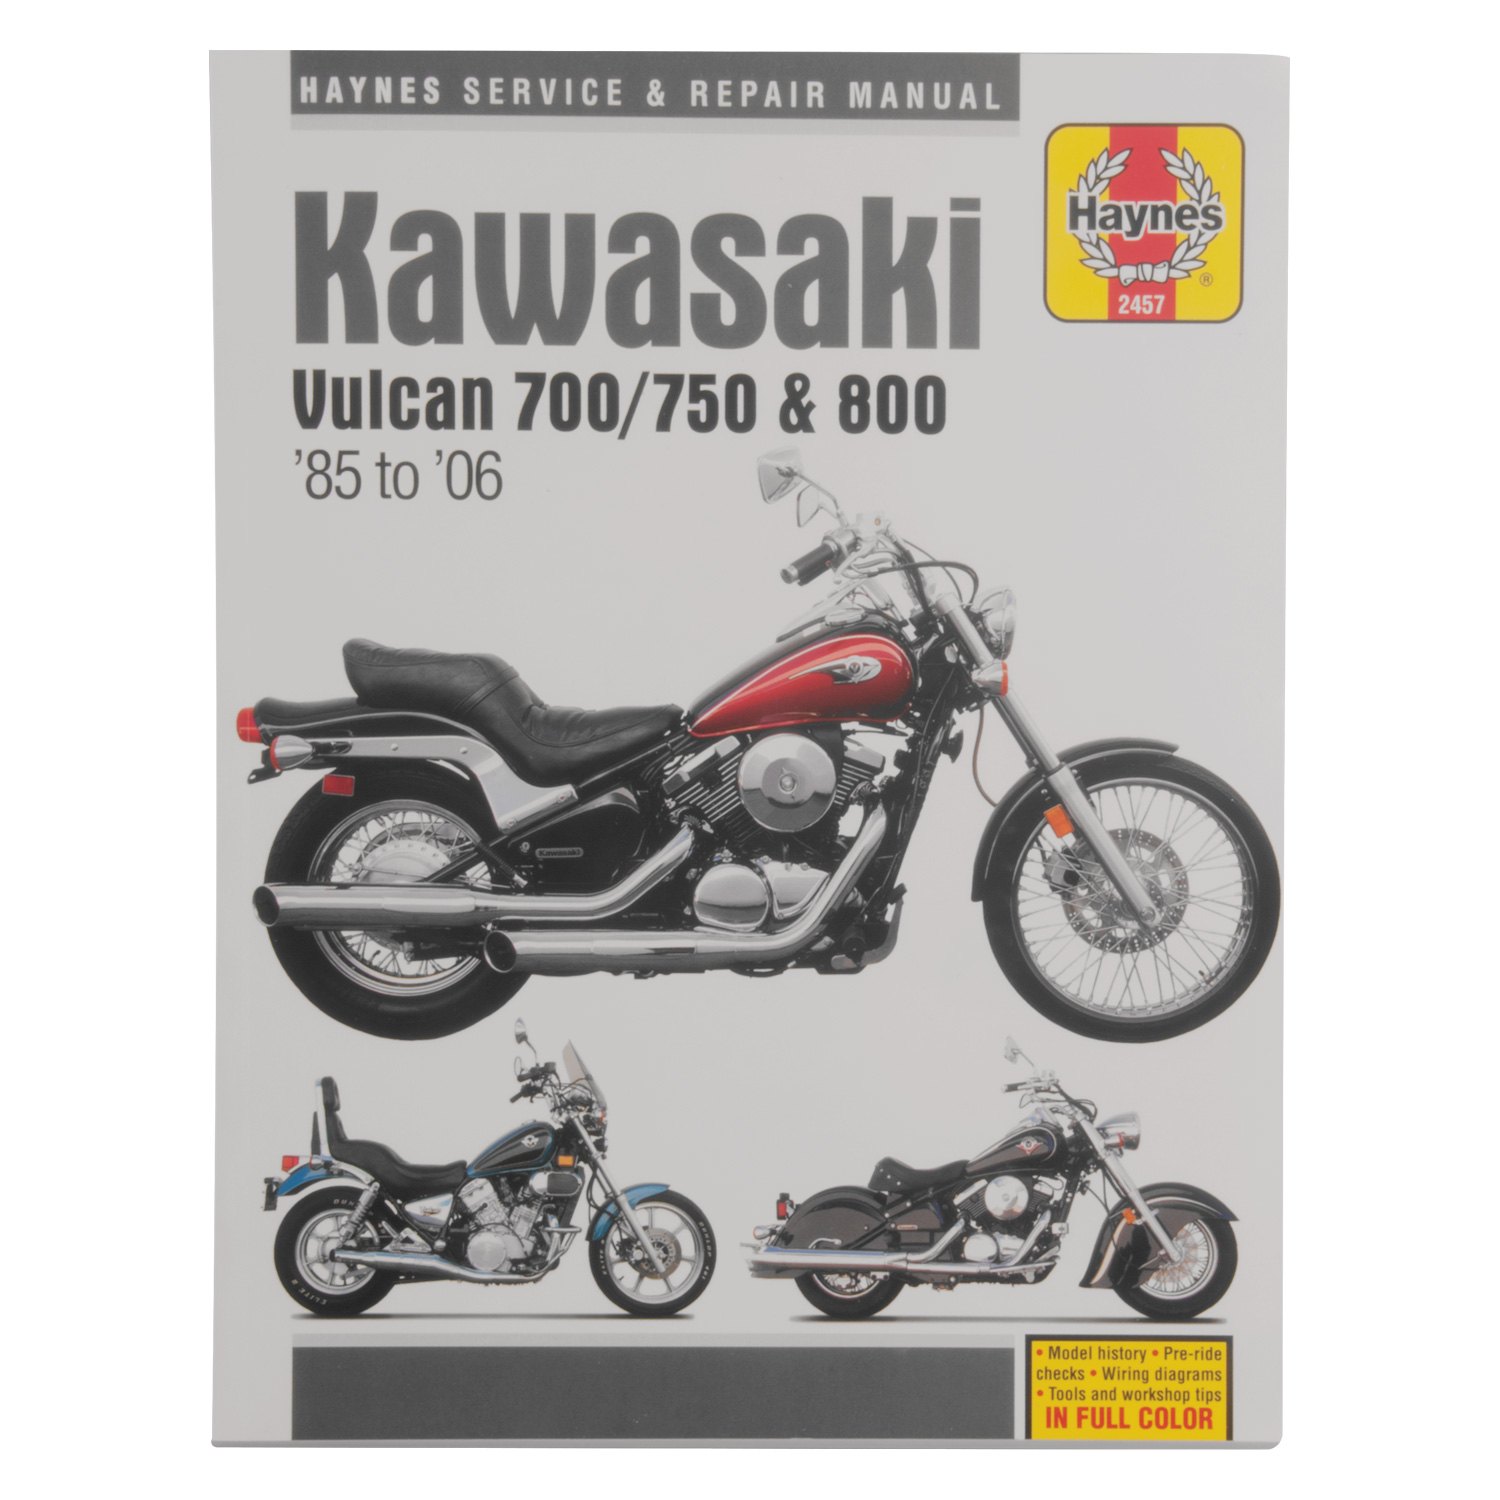 Haynes Manuals® - Kawasaki Vulcan 700, 750 & 800 1985-2004 Repair Manual - MOTORCYCLEiD.com